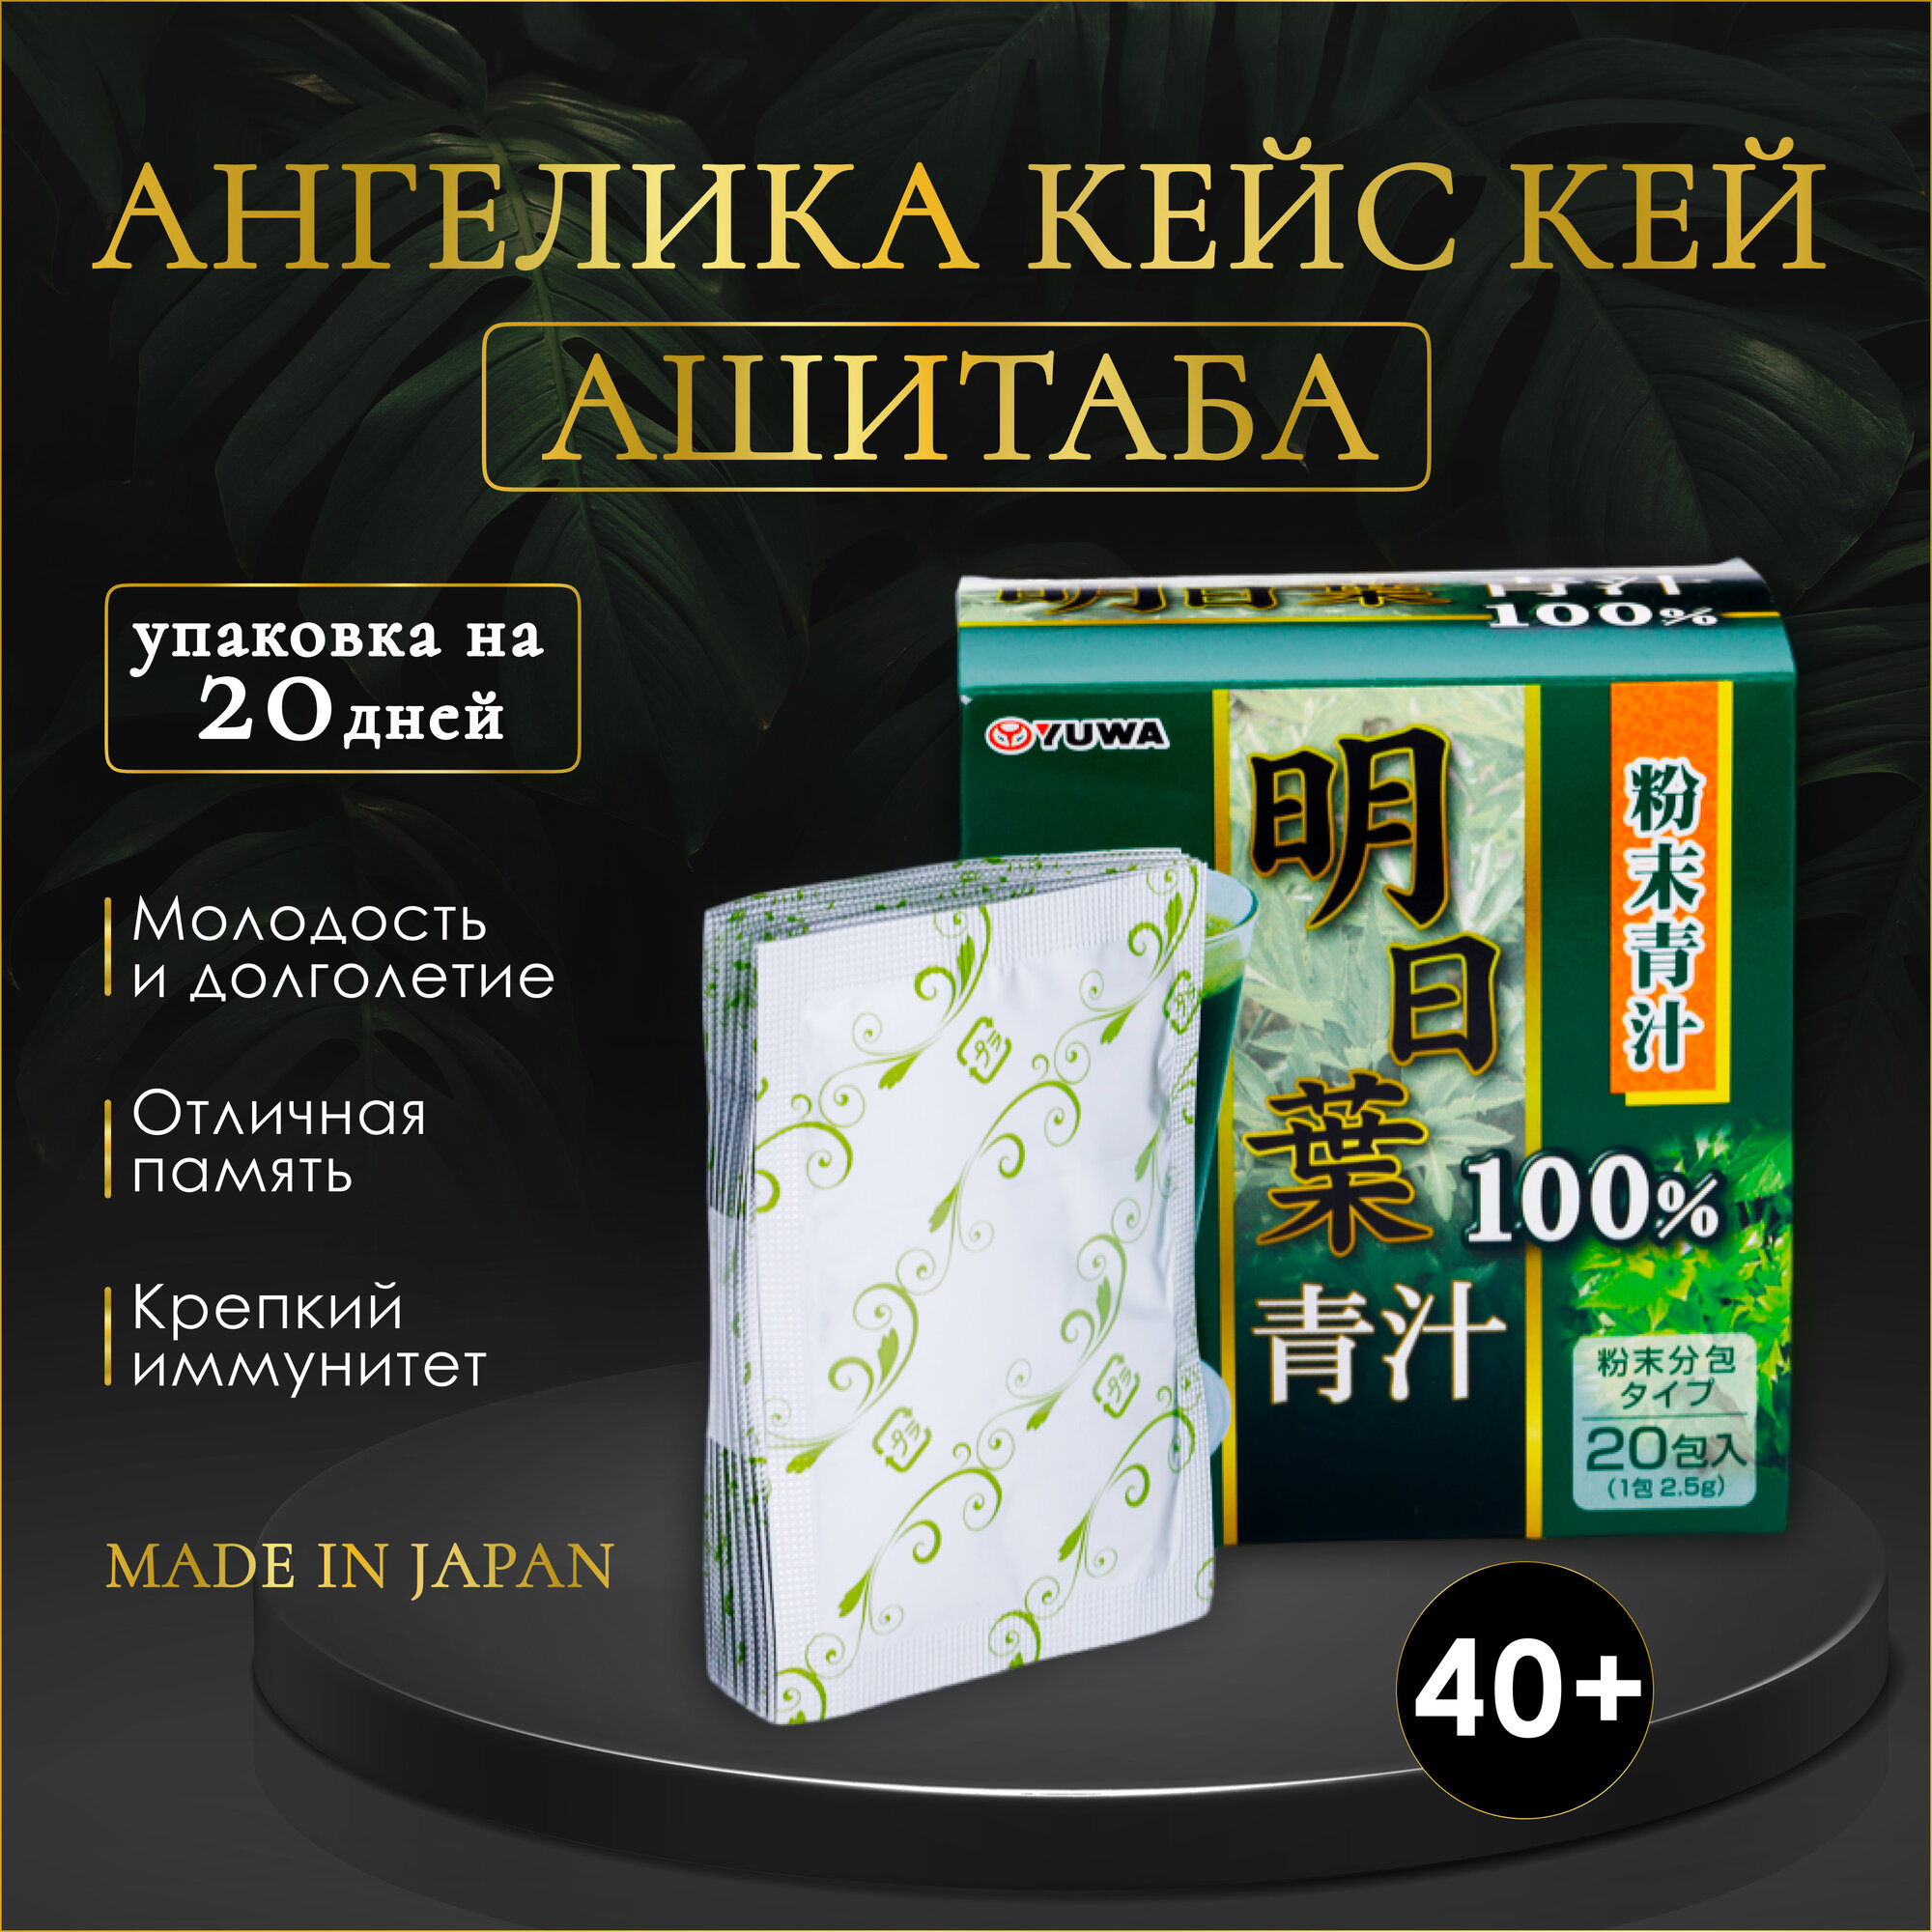 Японский растительный напиток для коррекции веса и устранения целлюлита Ангелика Кейс Кей Ашитаба (дудник), 20 саше